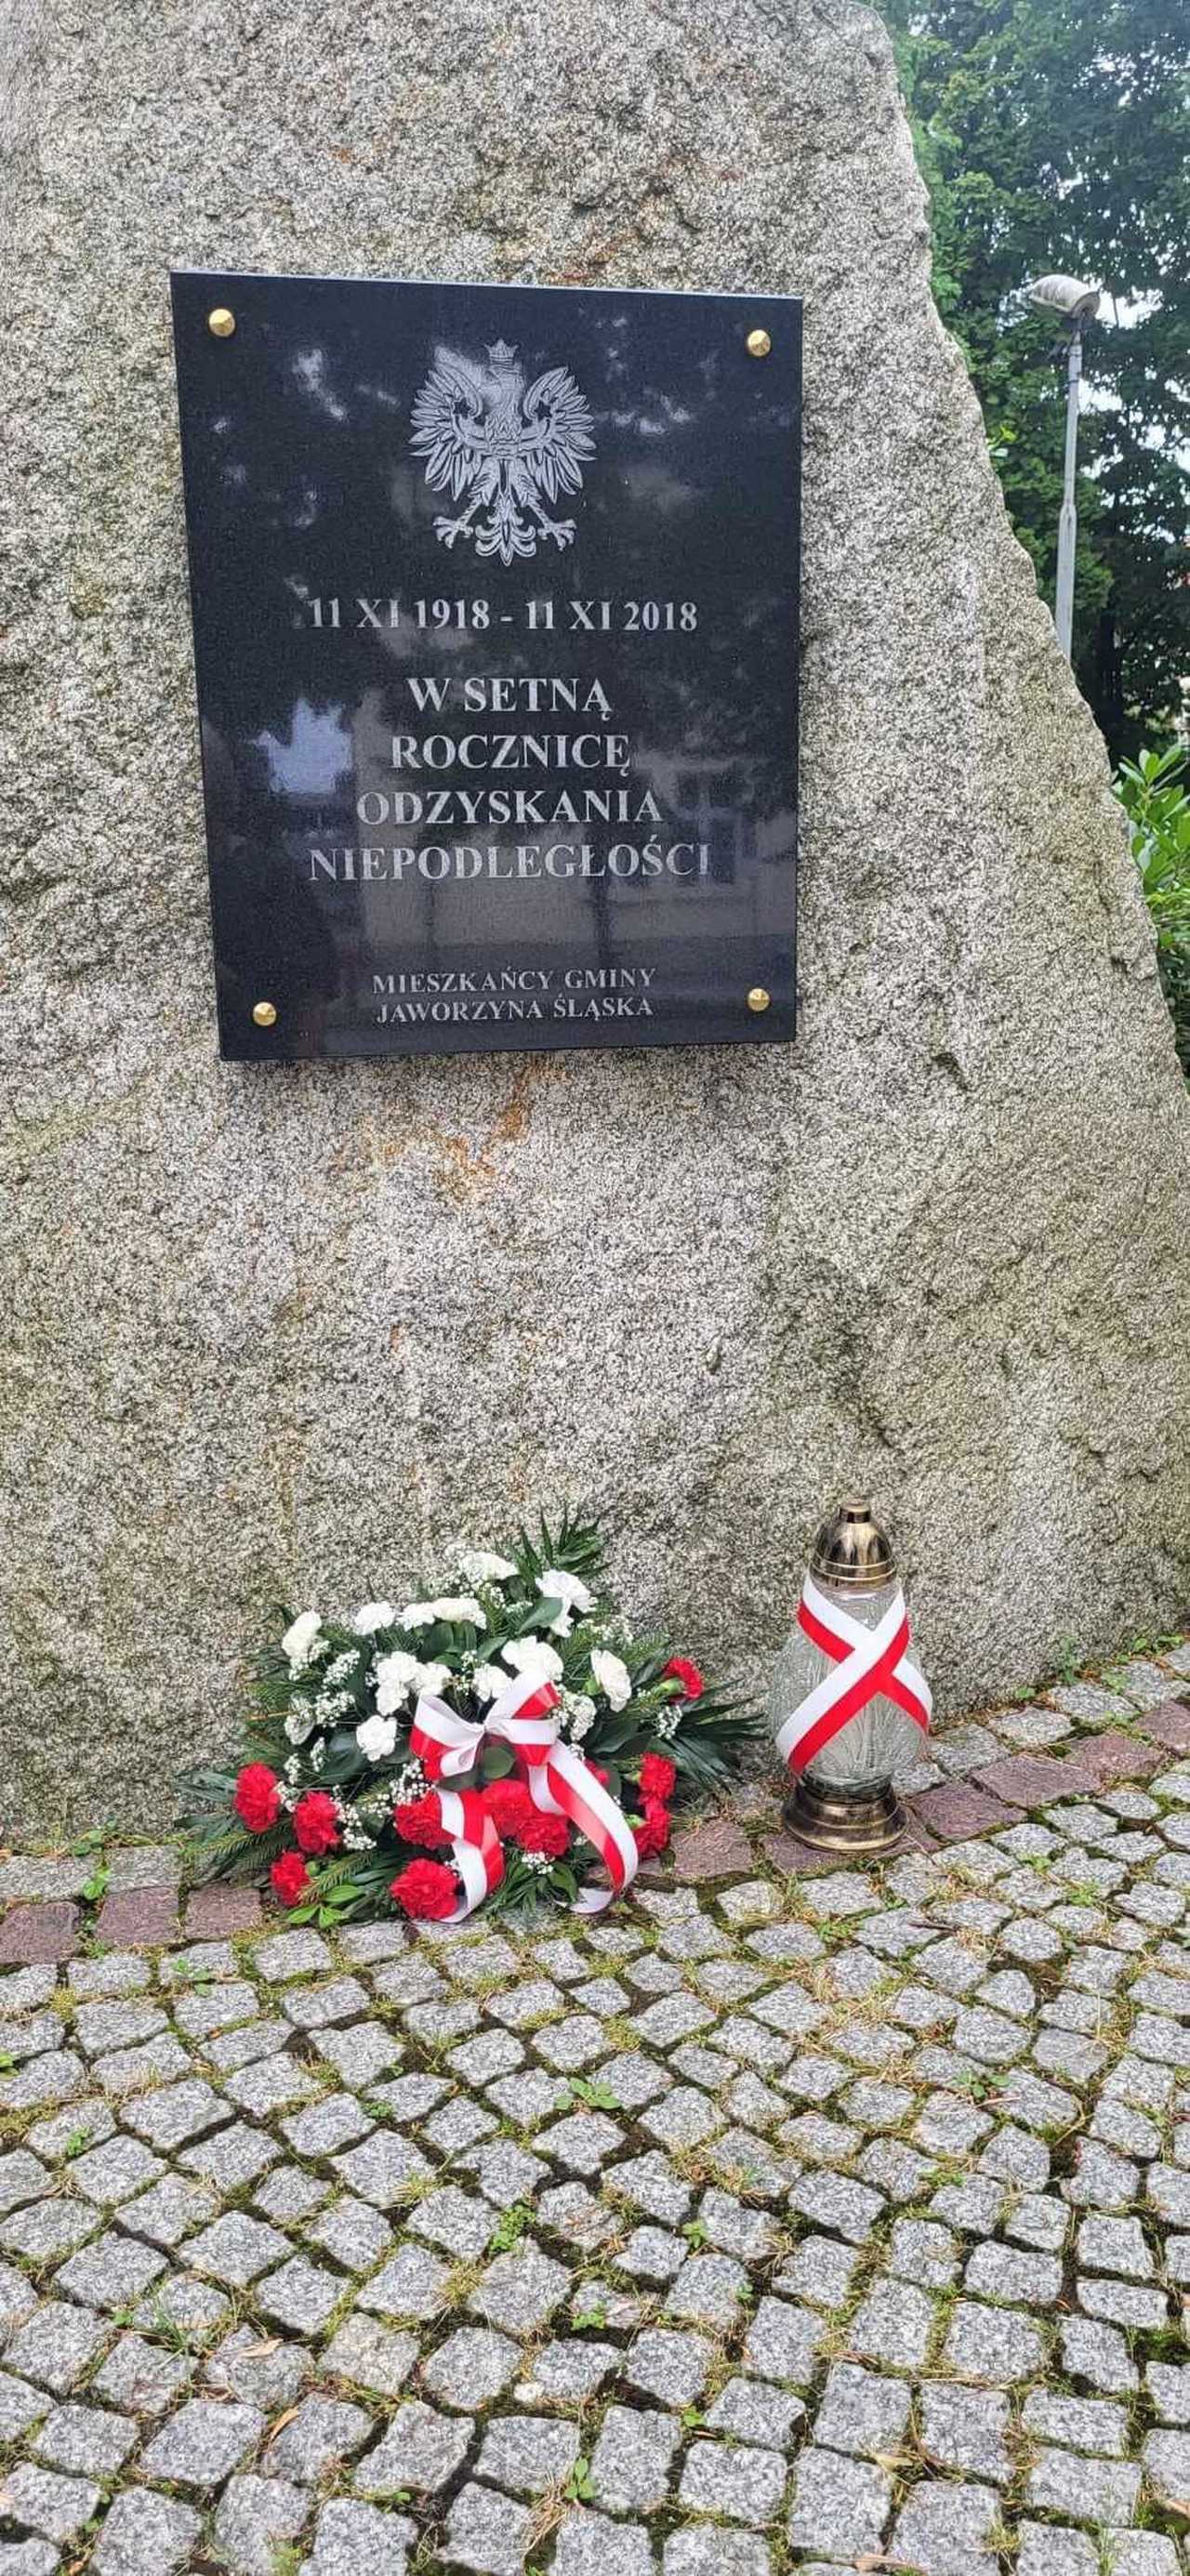 Władze Jaworzyny Śląskiej upamiętniła rocznicę wybuchu powstania warszawskiego [FOTO]